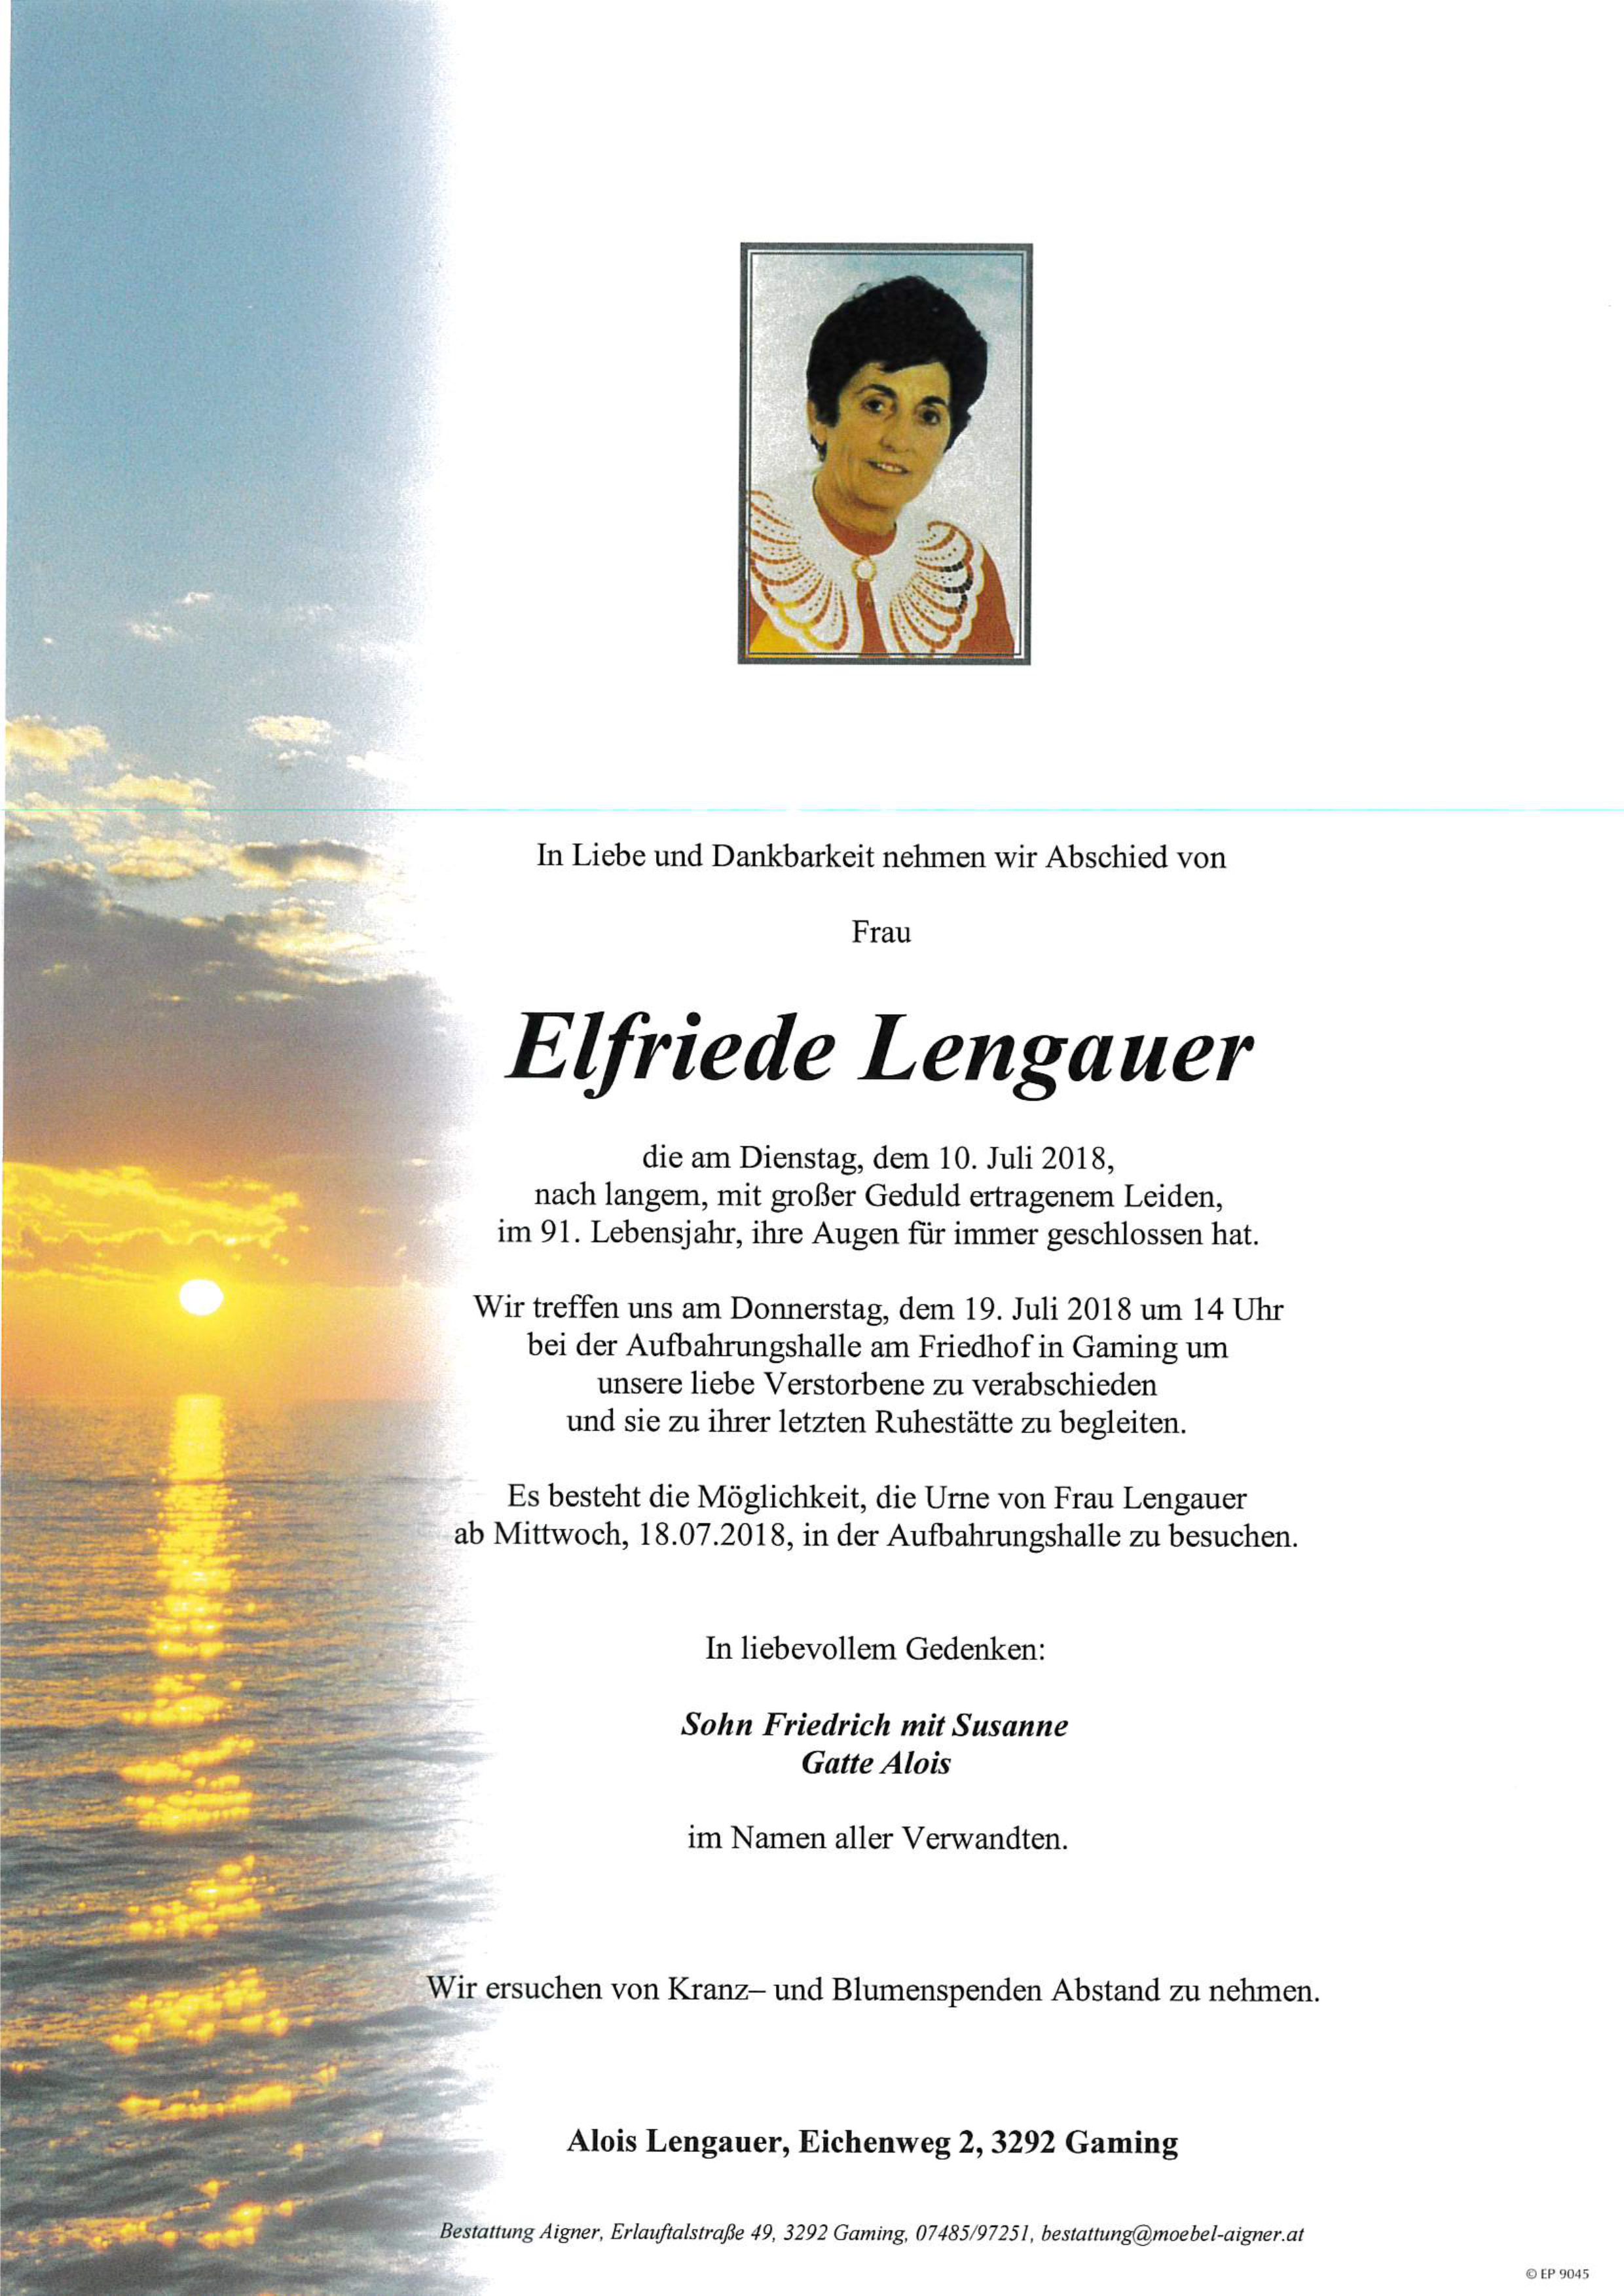 Elfriede Lengauer